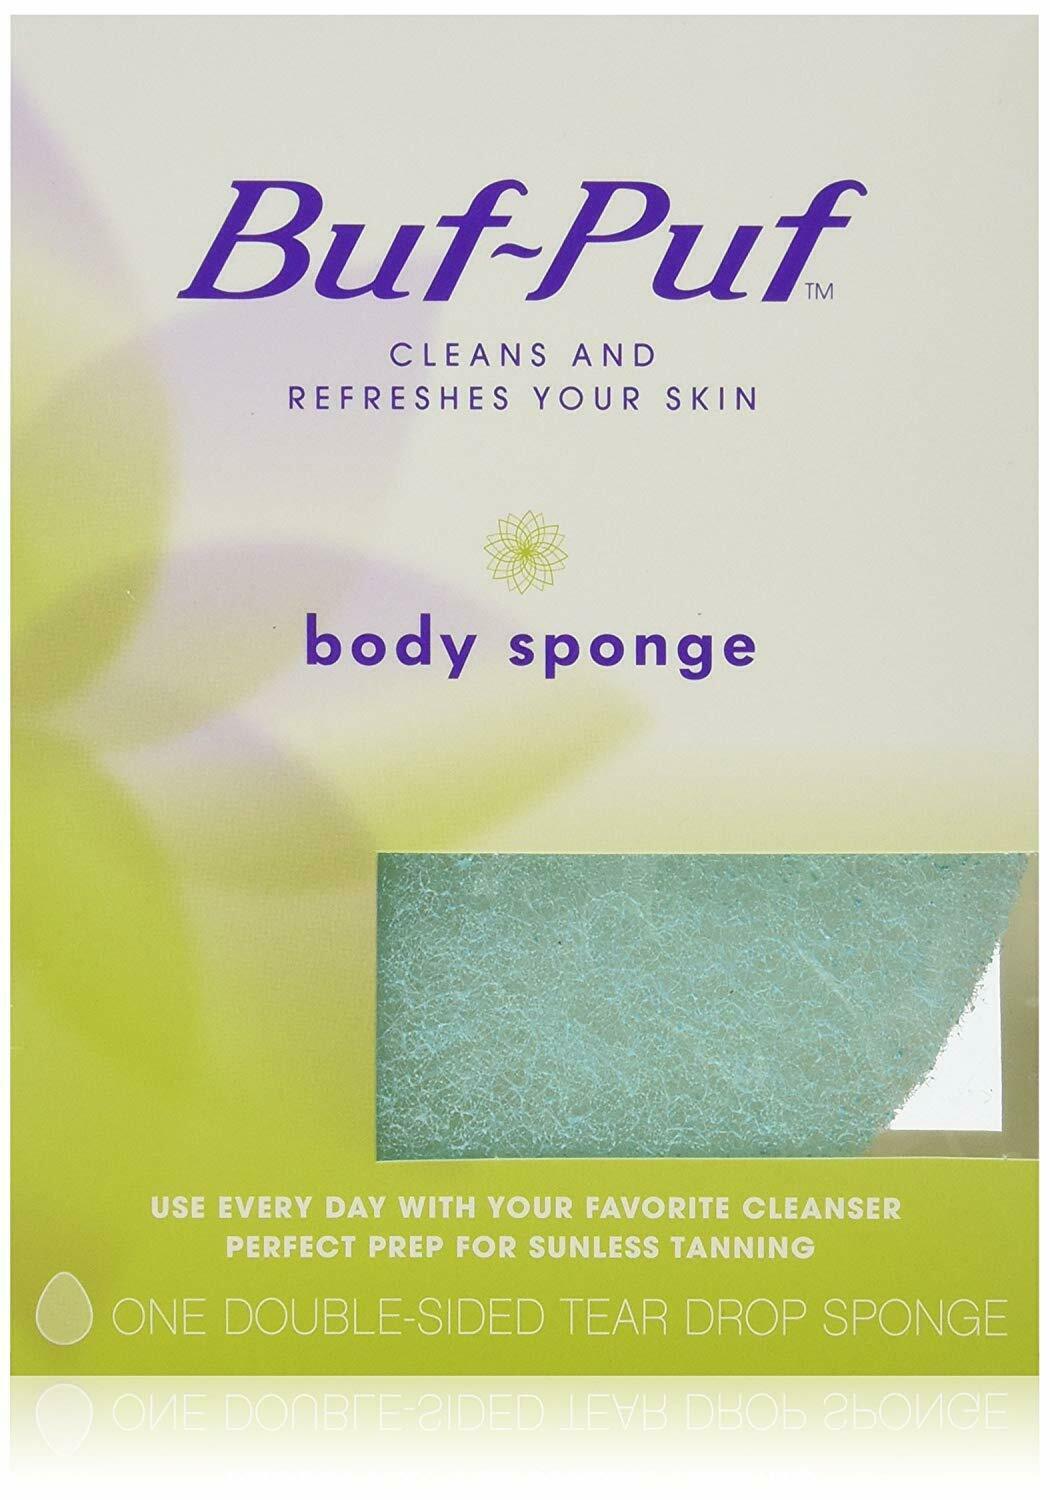 Buf-puf Double-sided Body Sponge